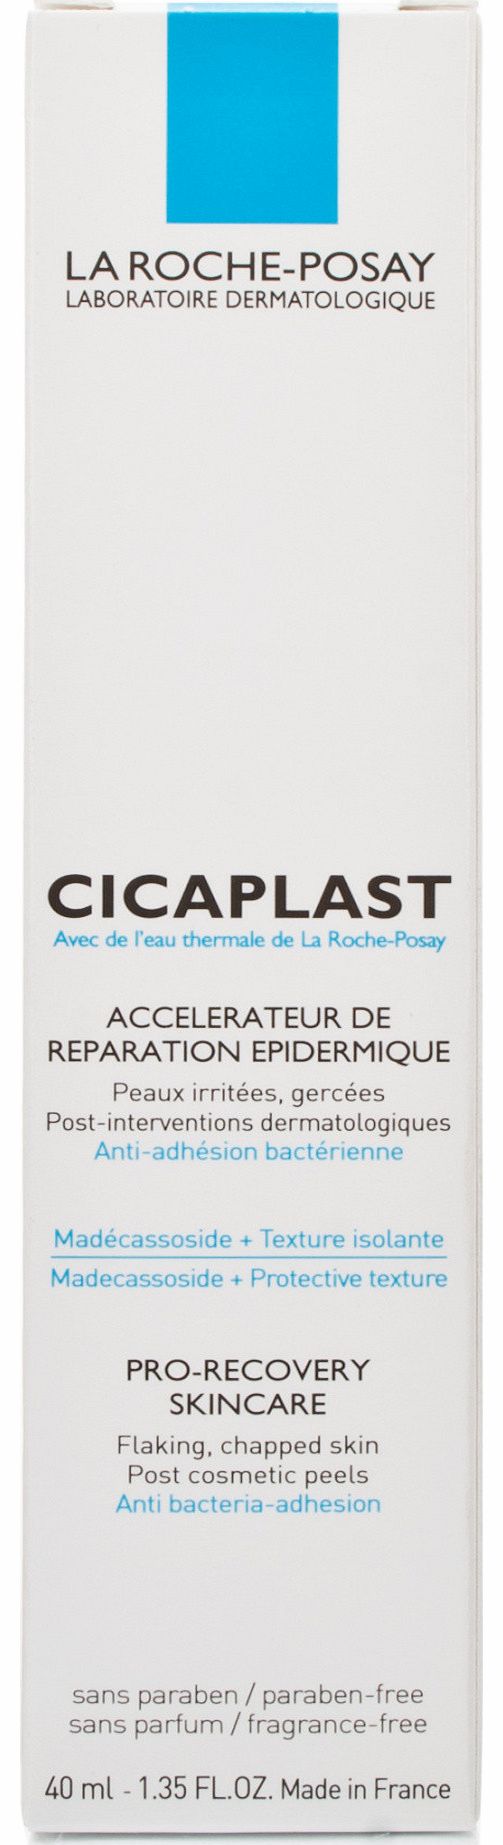 La Roche-Posay La Roche Posay Cicaplast Pro-Recovery Skincare